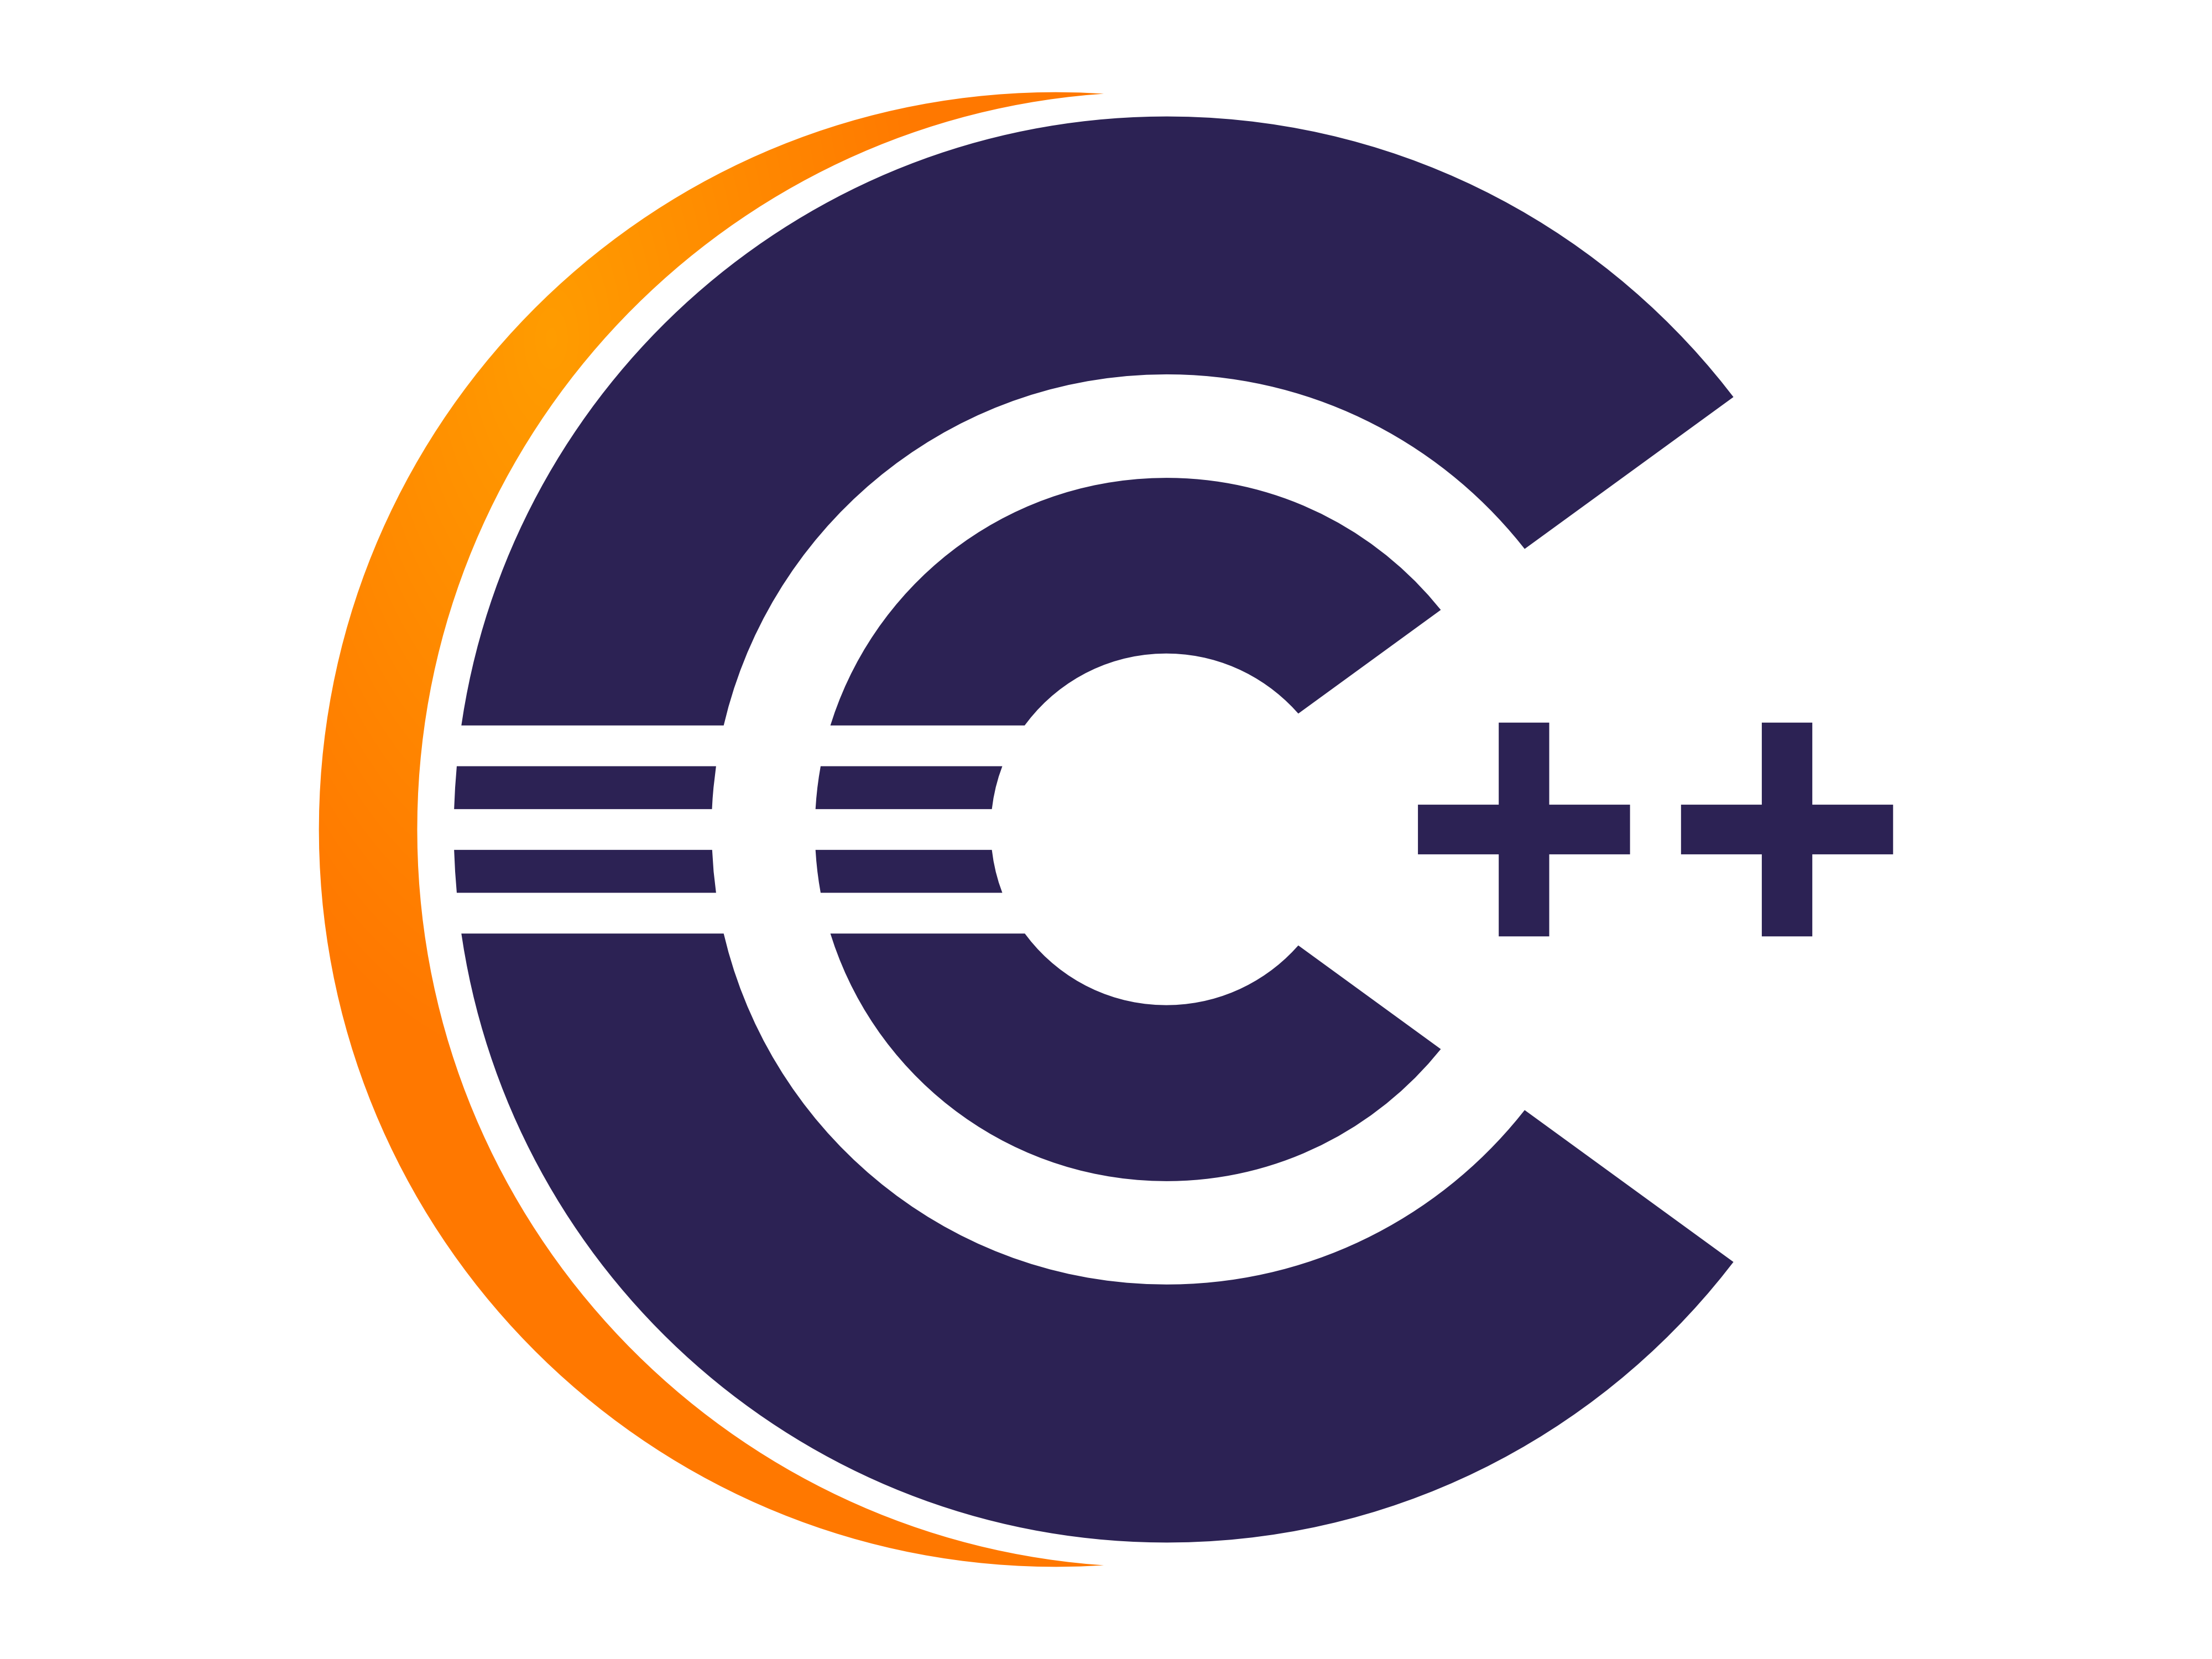 Development Arduino Eclipse C++ Transparent Environment Linux PNG Image